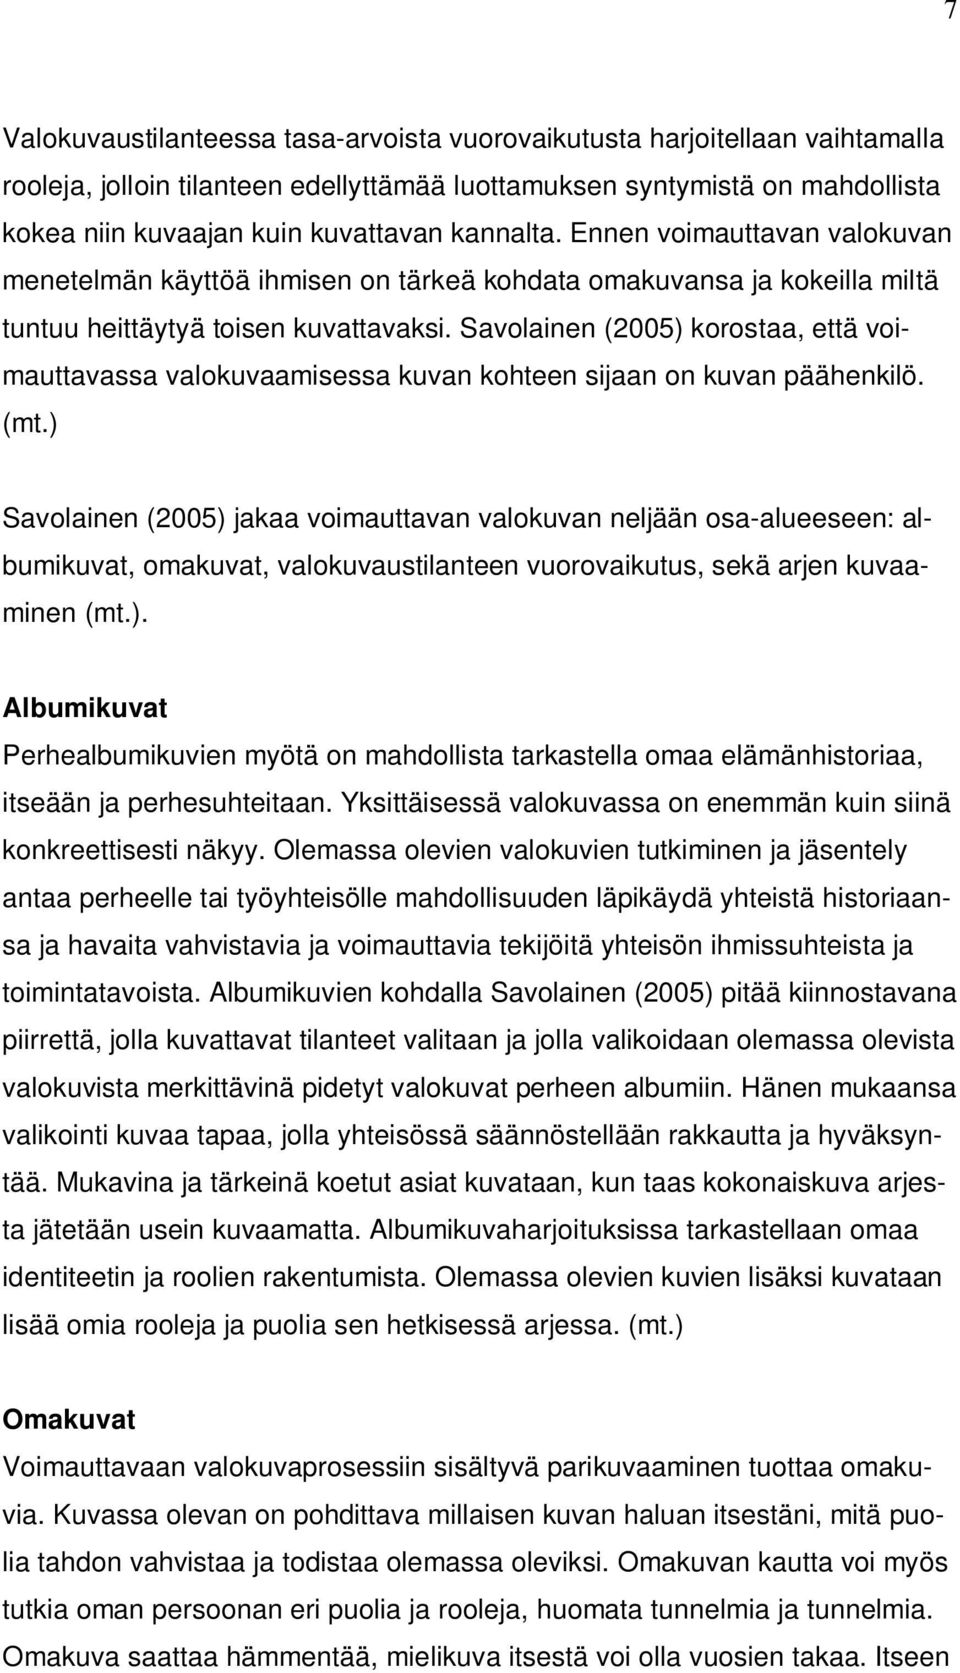 Savolainen (2005) korostaa, että voimauttavassa valokuvaamisessa kuvan kohteen sijaan on kuvan päähenkilö. (mt.